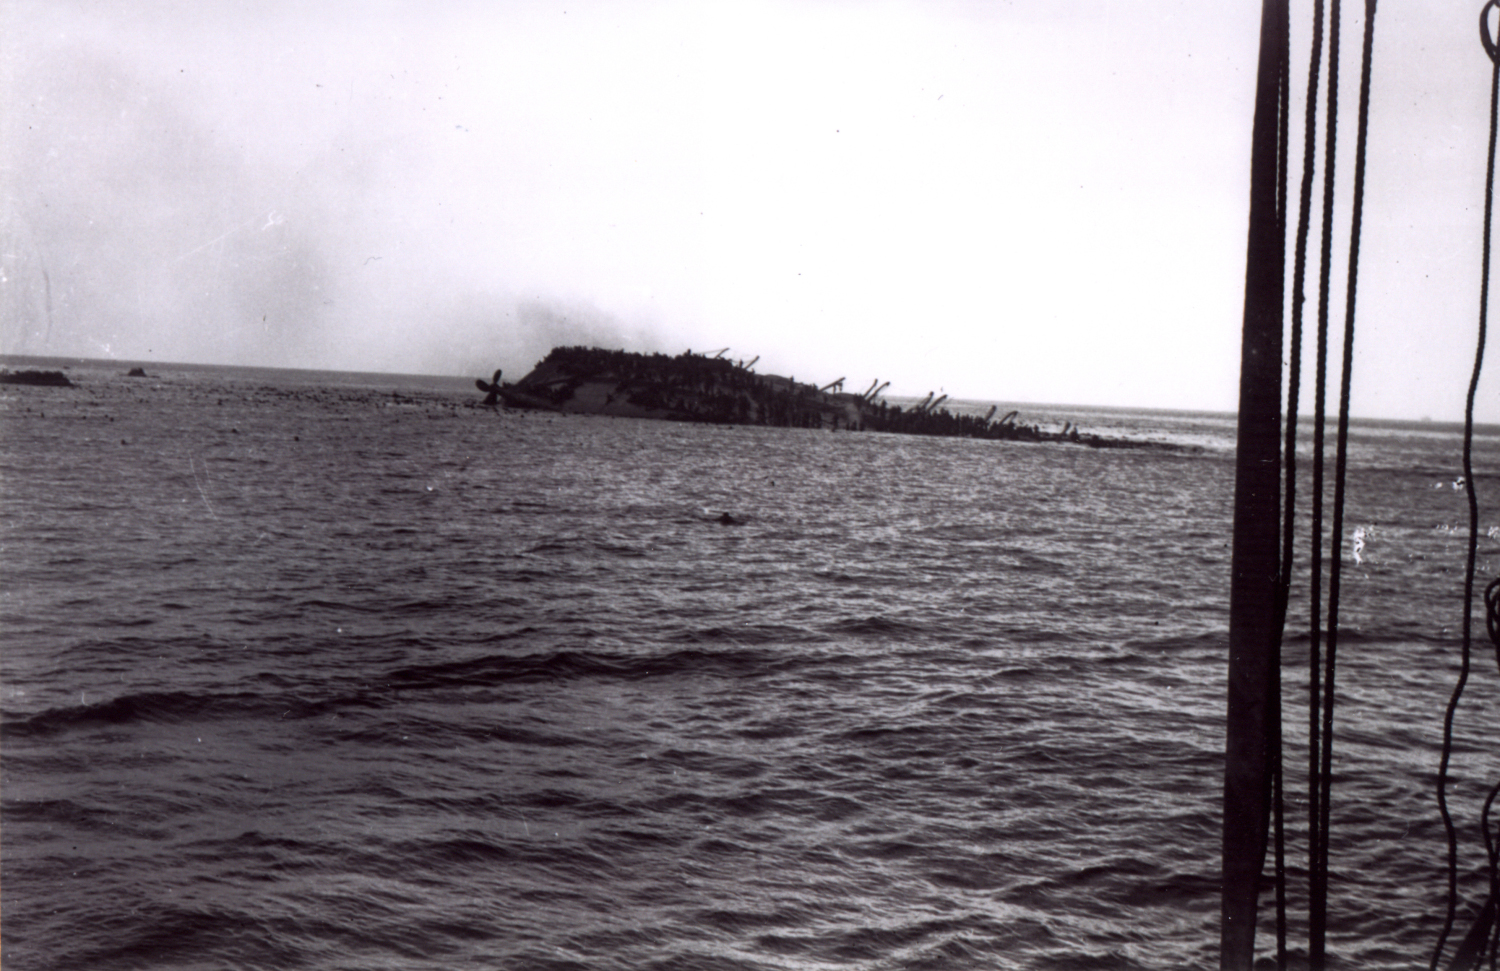 Faisant route sur le Lancastria, l’équipage du destroyer Highlander assiste impuissant à l’agonie de milliers de passagers. Collection Yves Beaujuge.